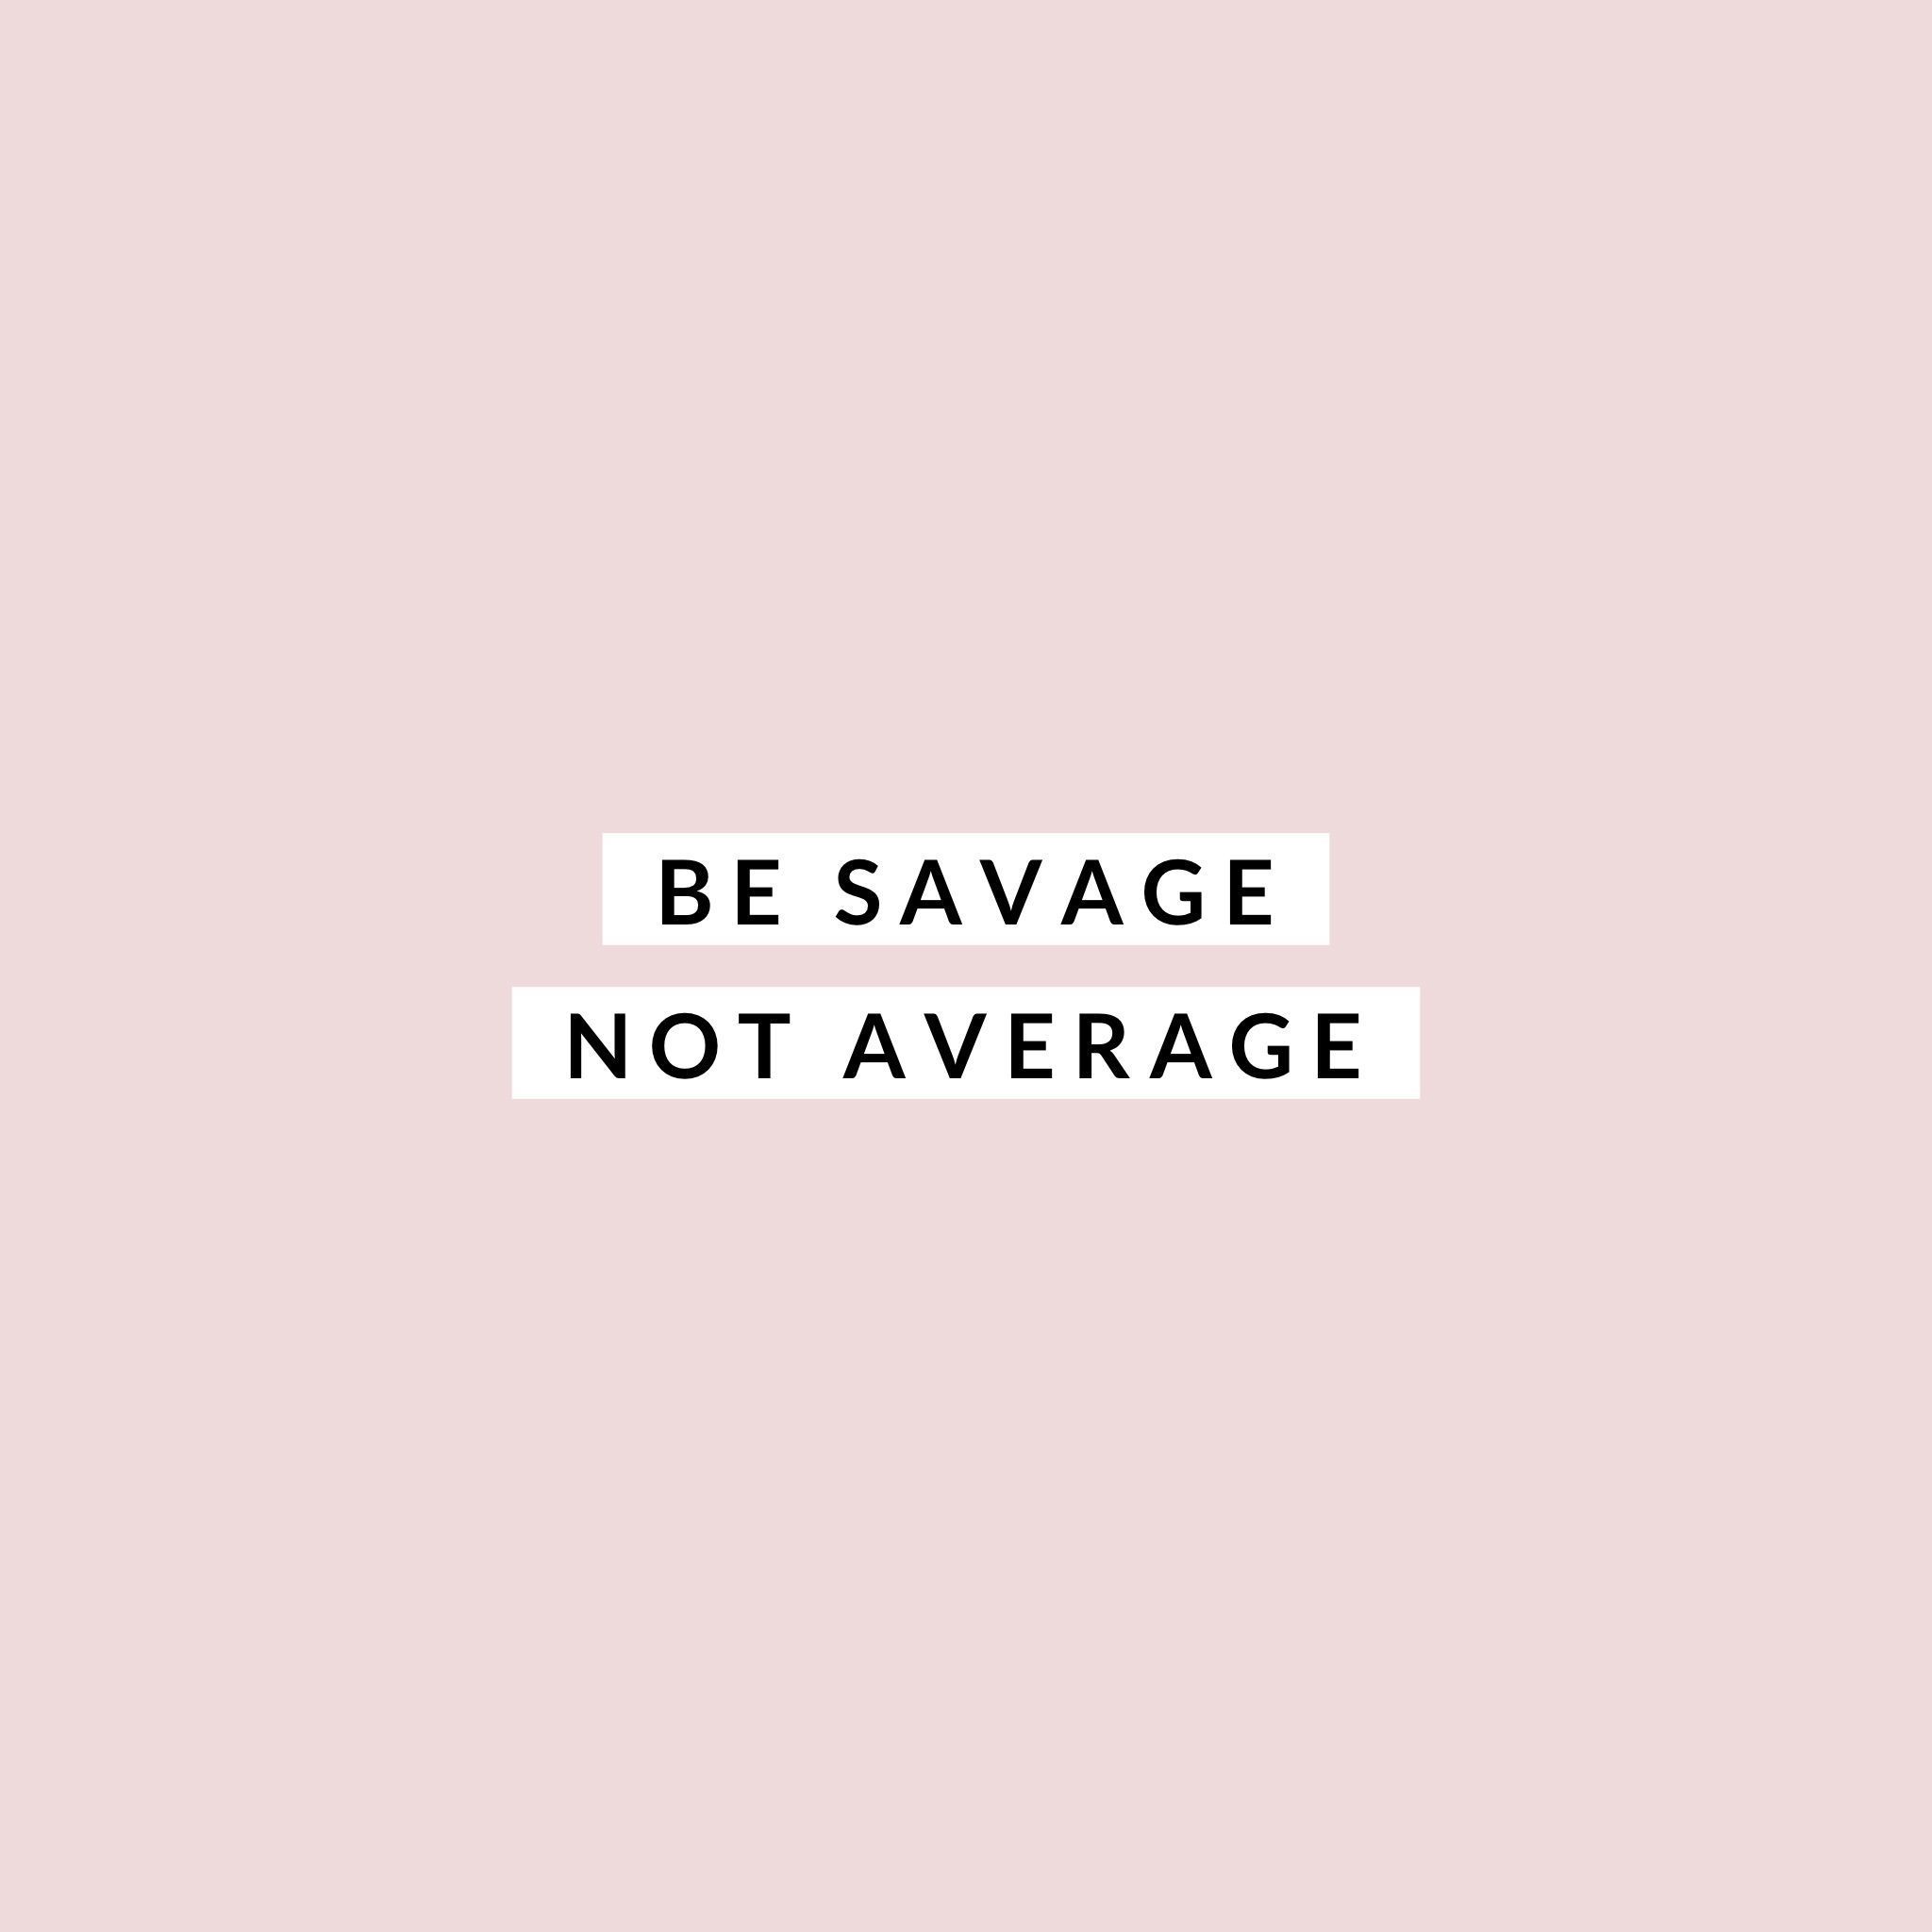 Be savage. Not average